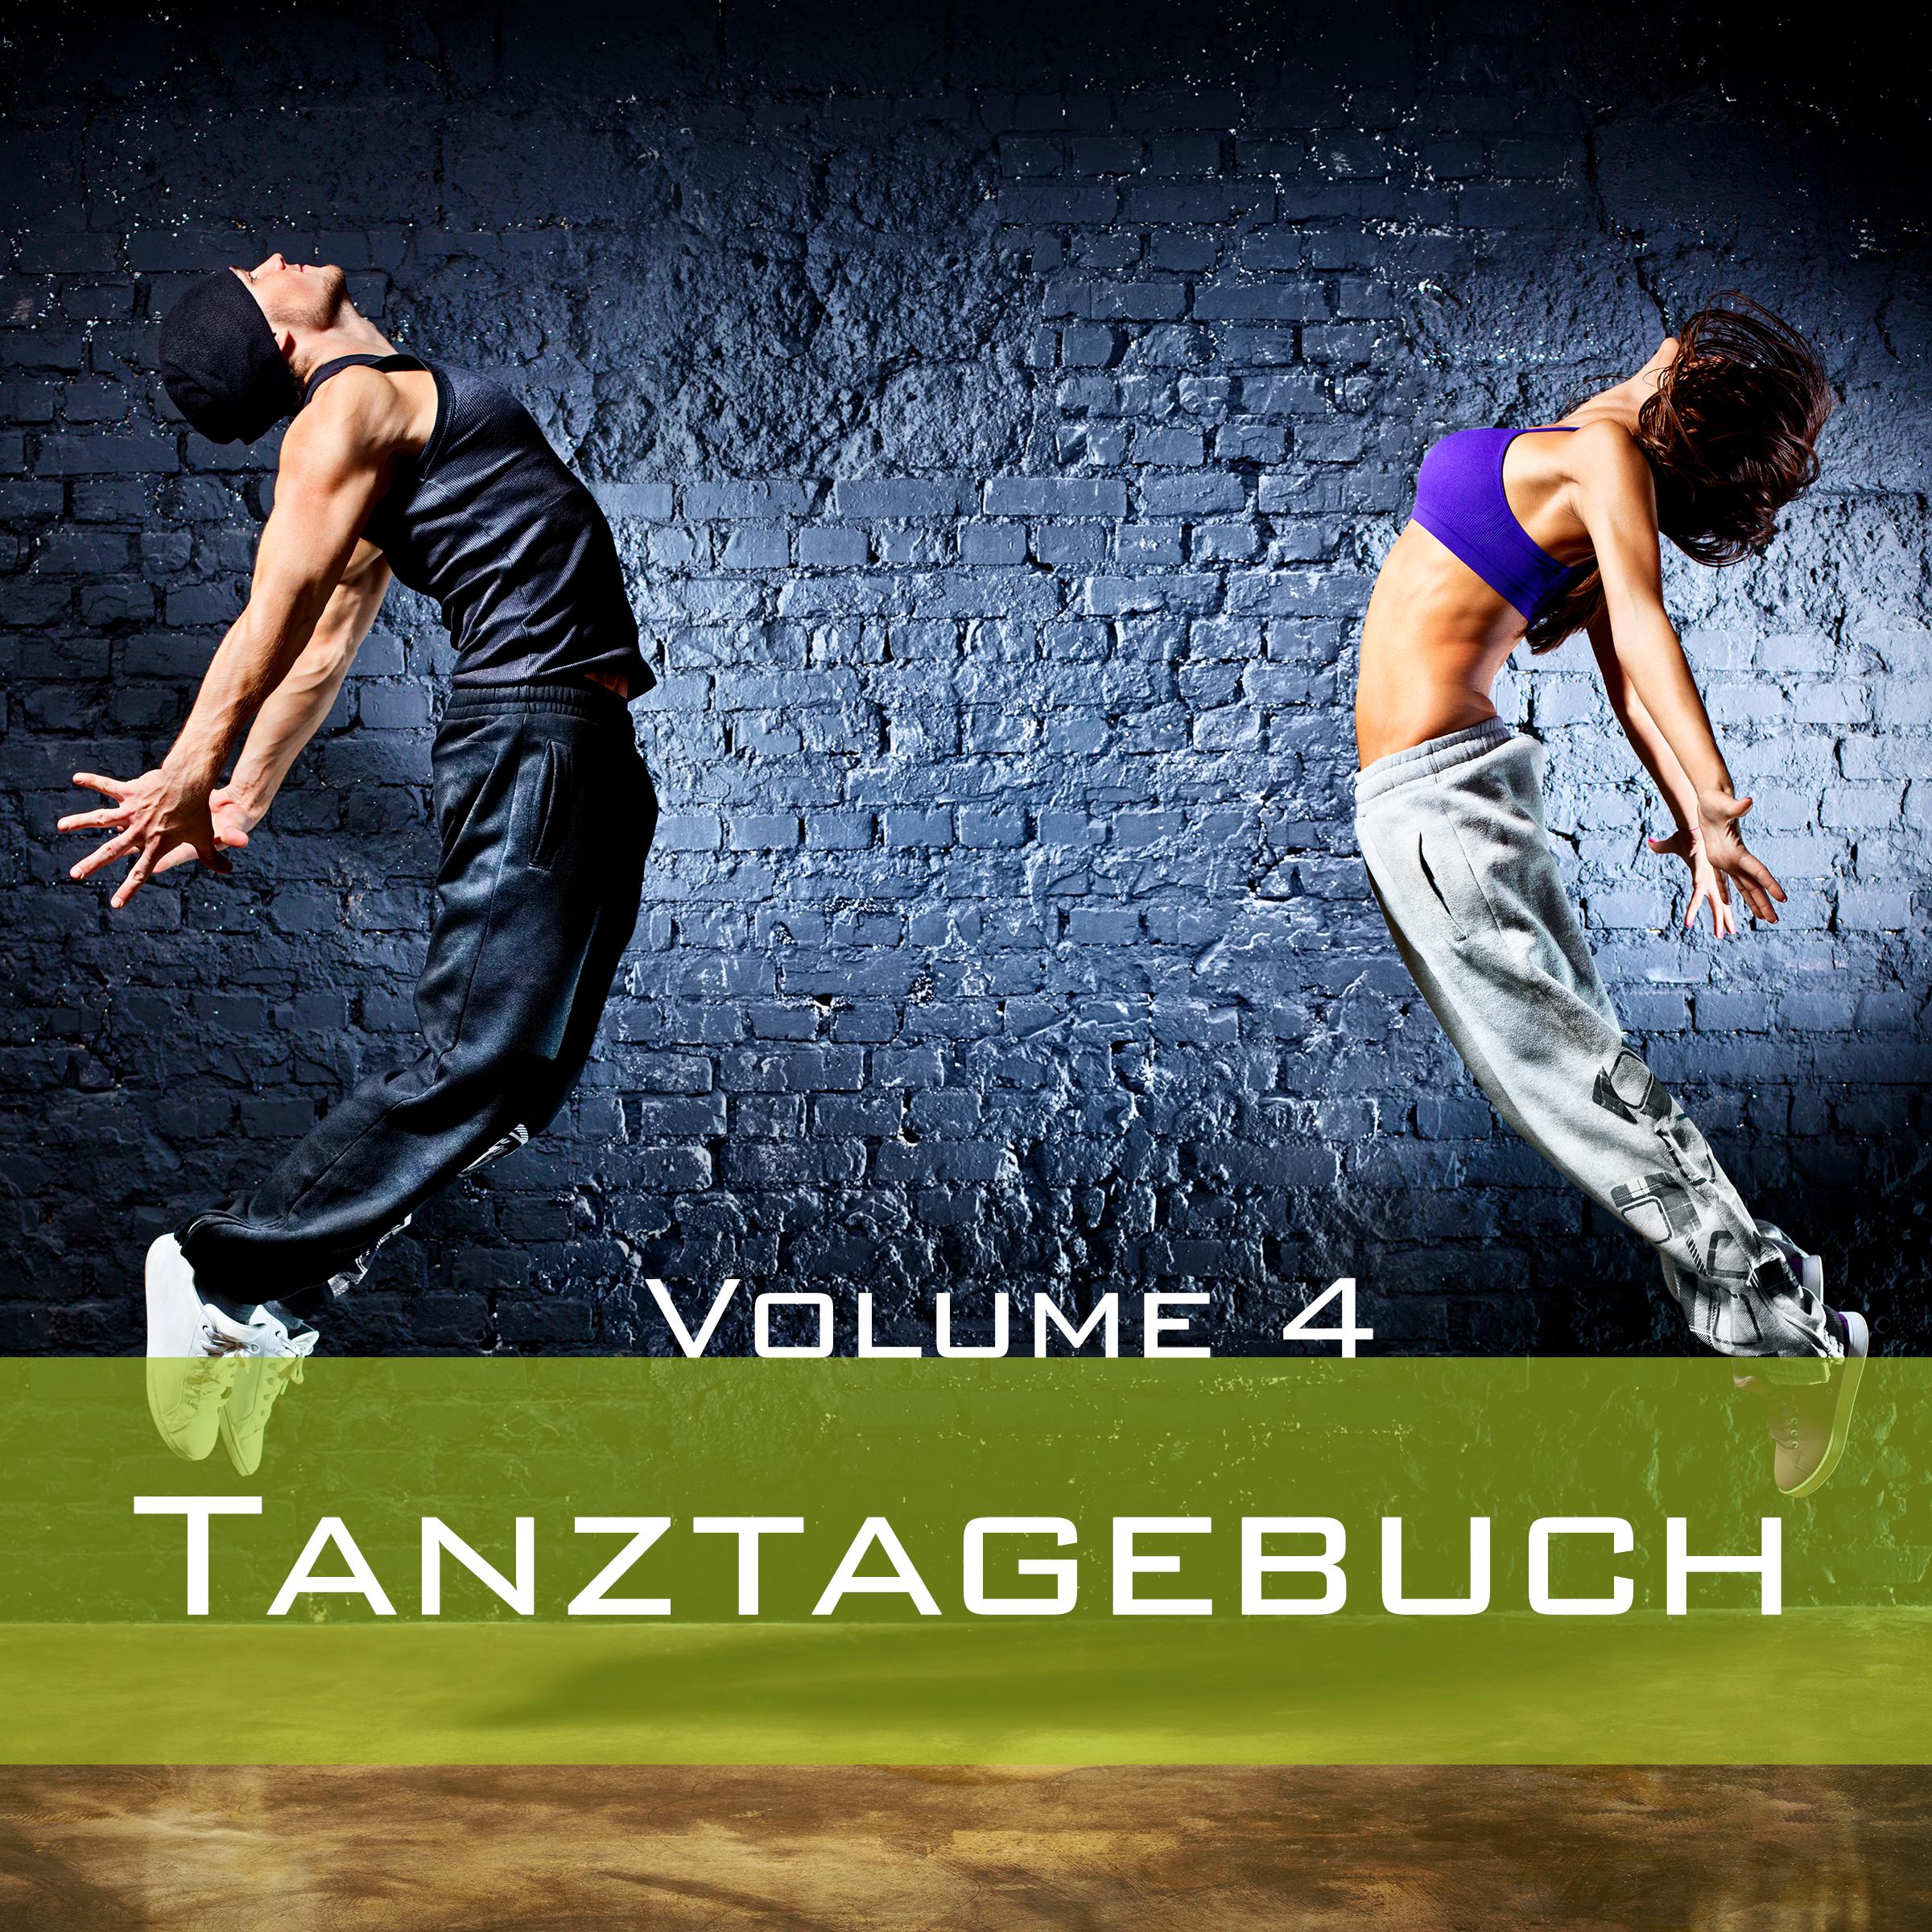 Tanztagebuch, Vol. 4